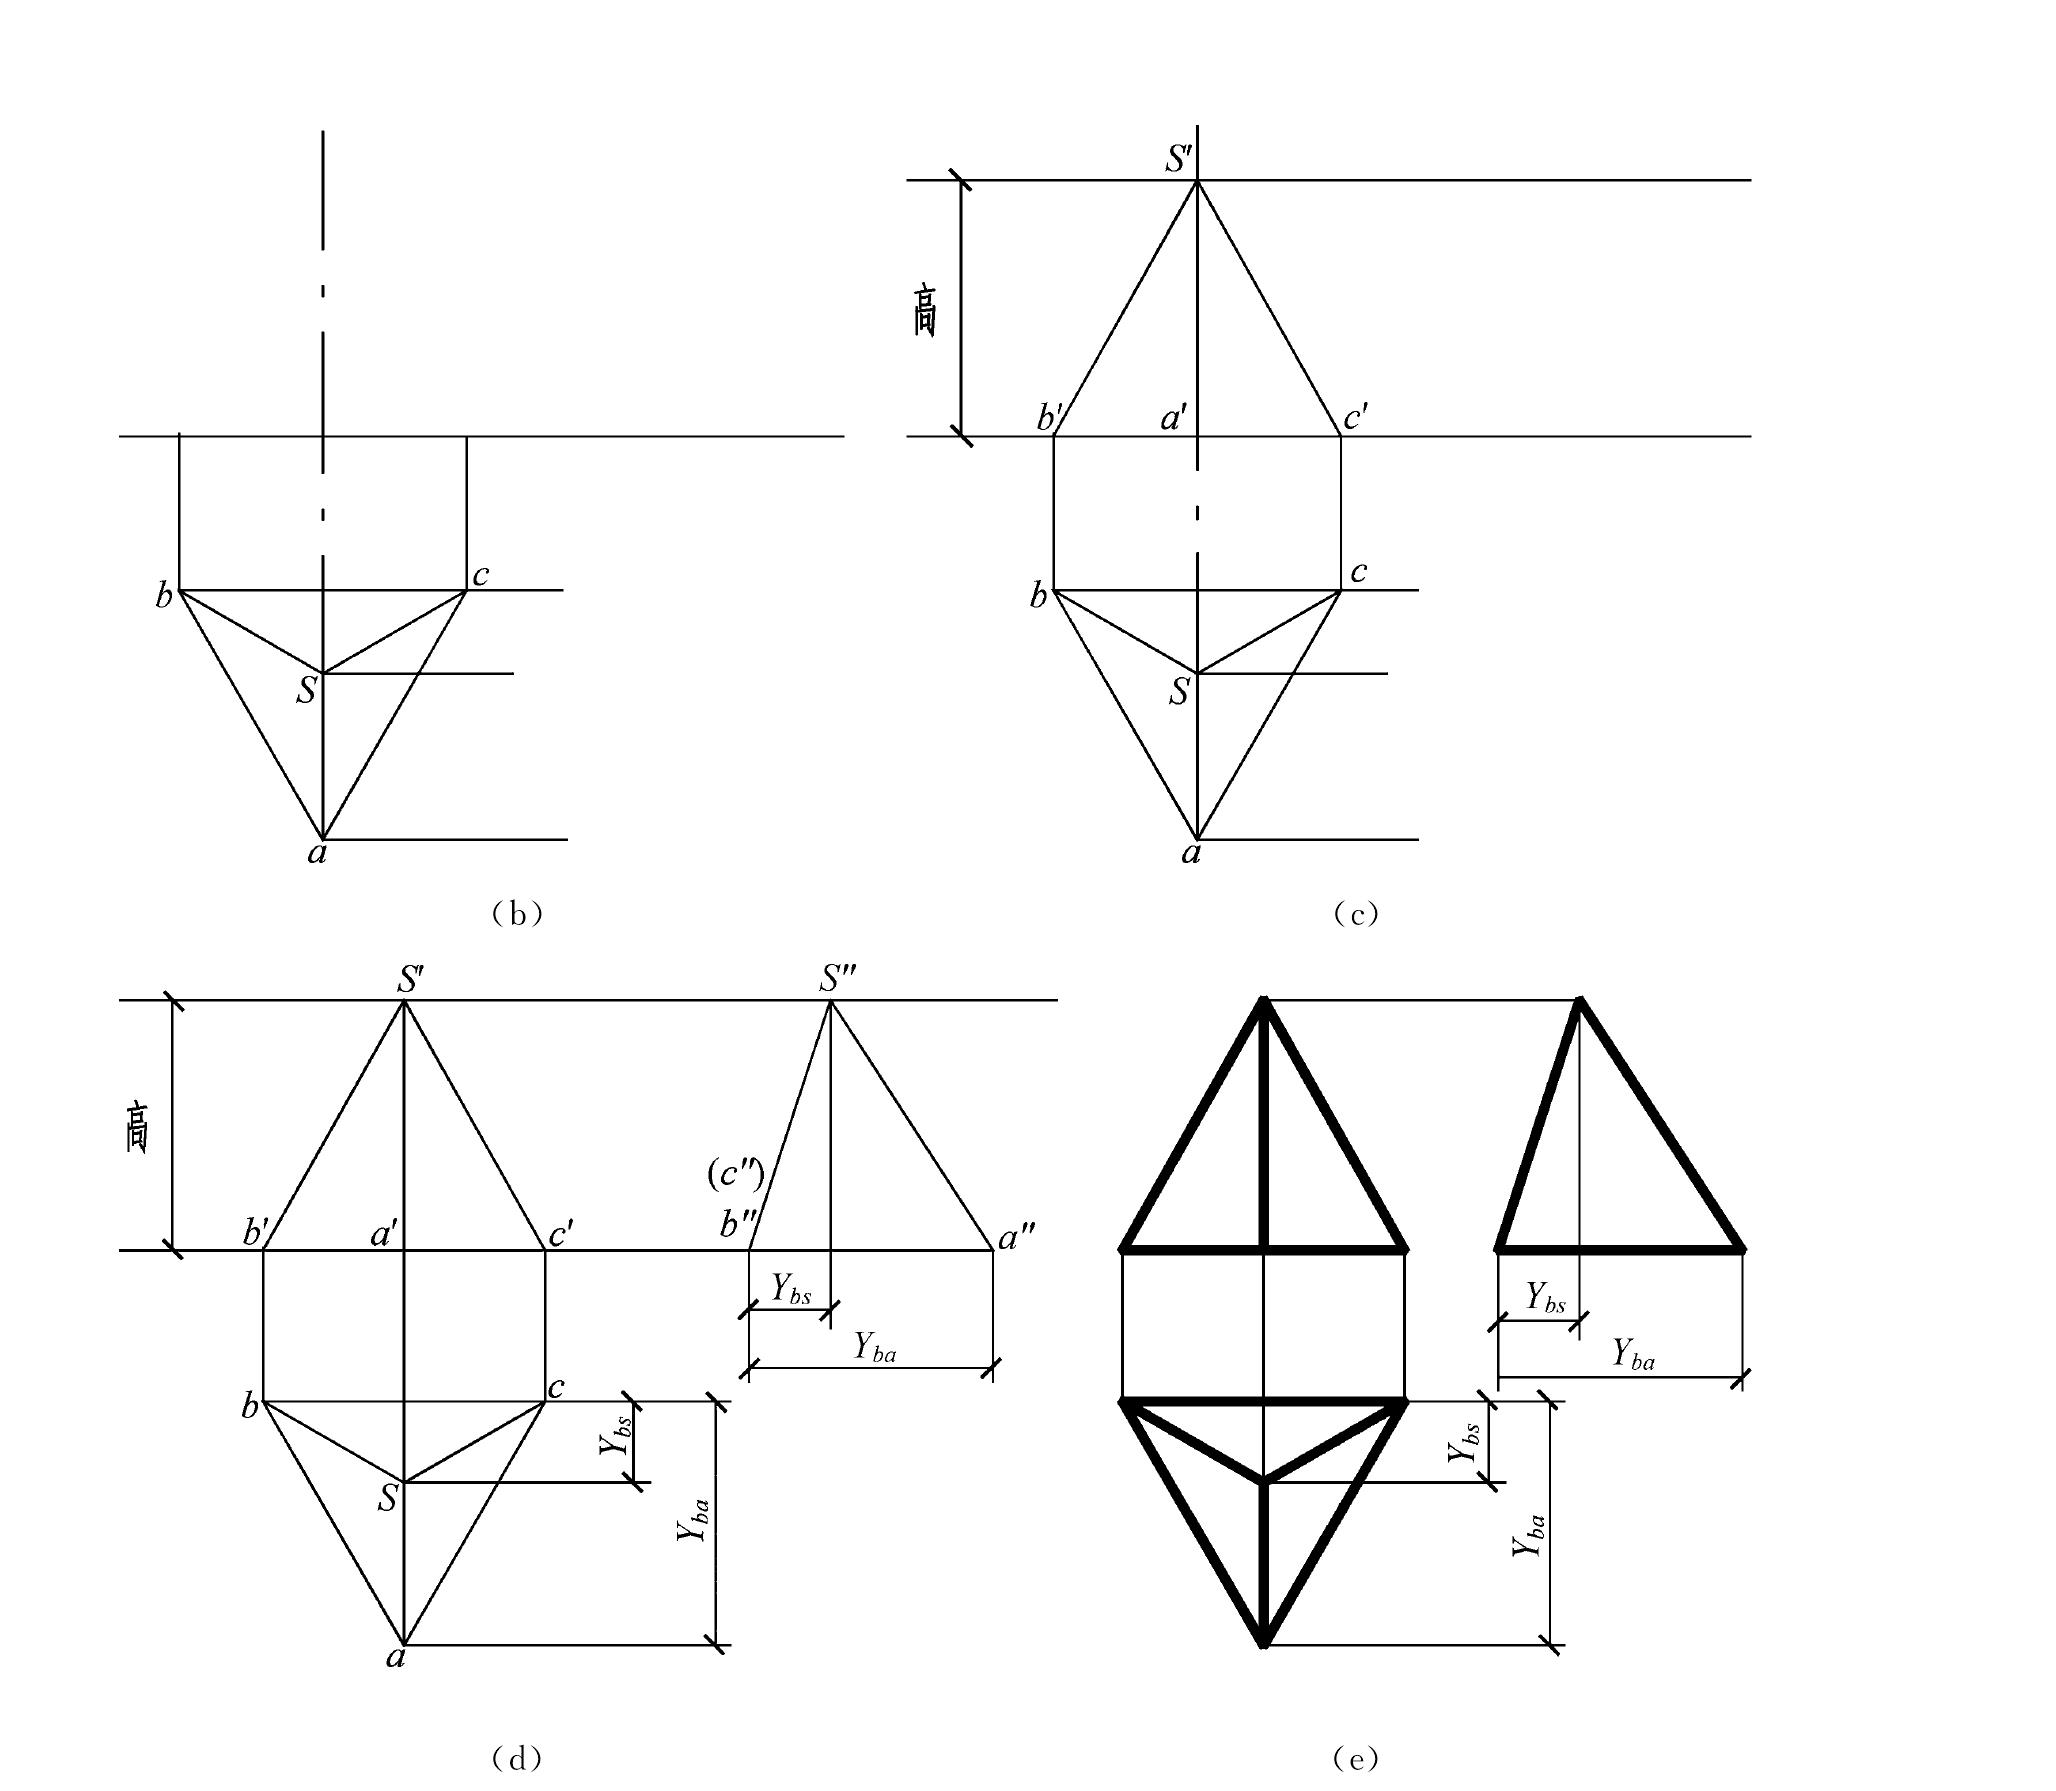 二、基本几何形体正投影图的绘图方法和步骤